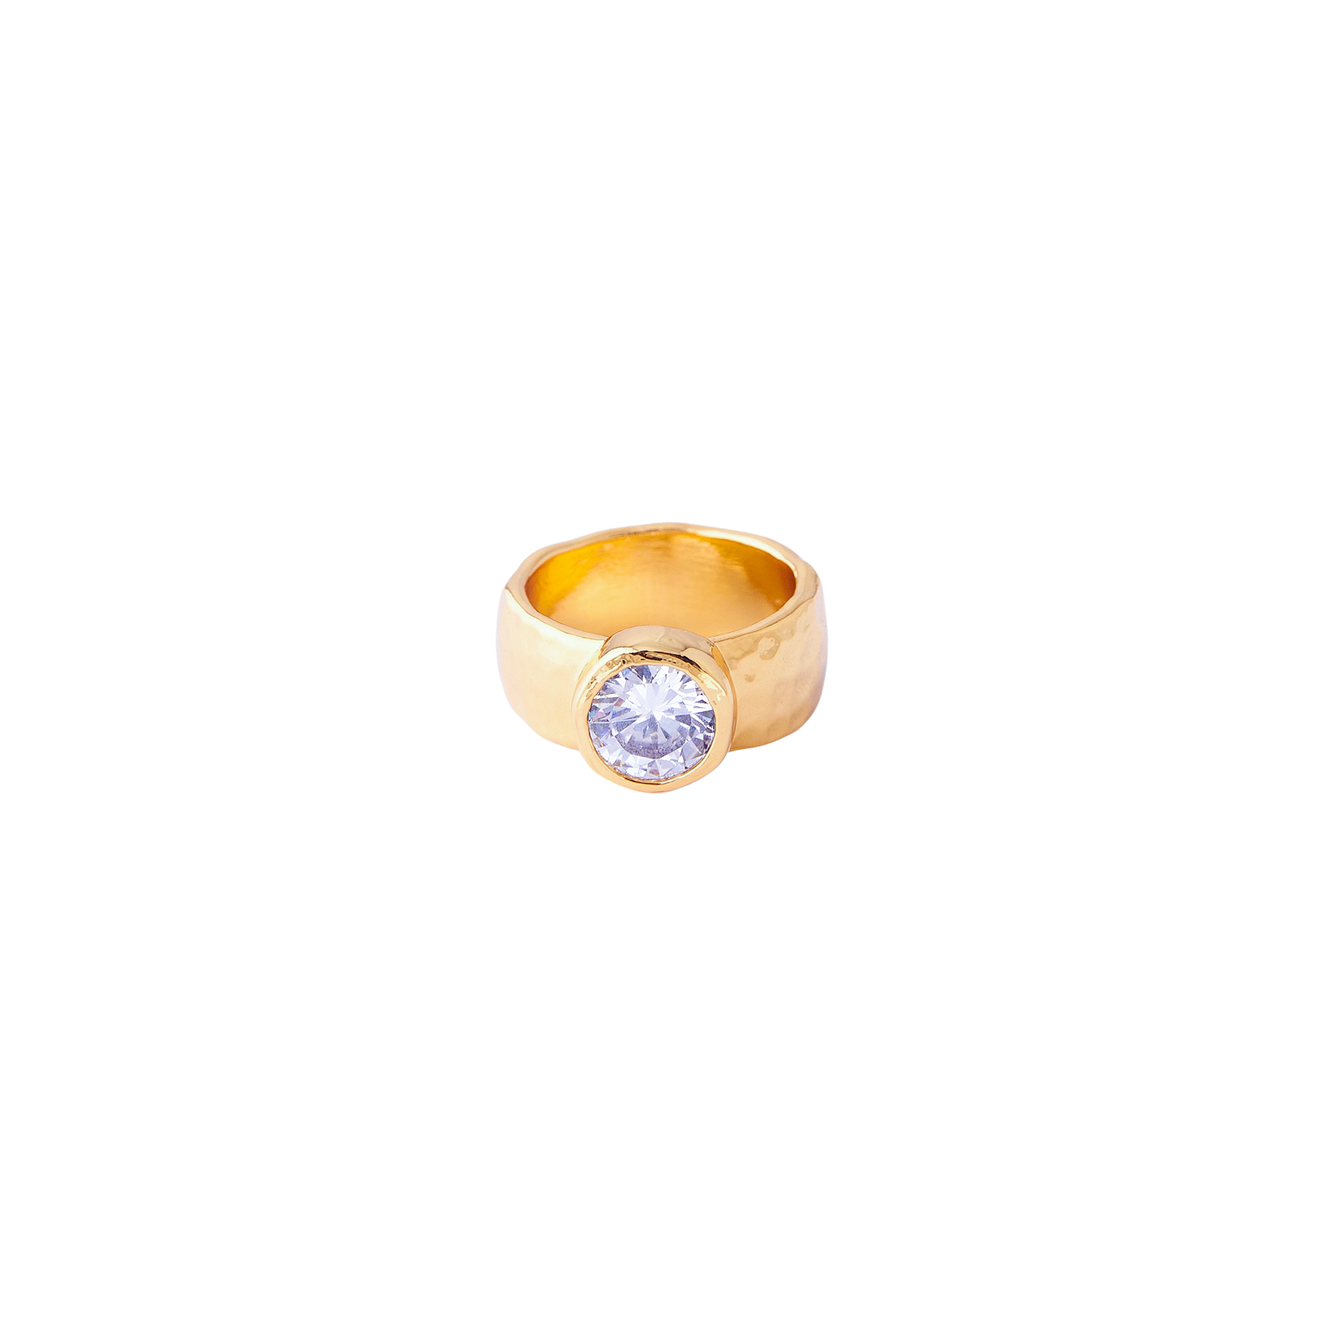 Herald Percy Золотистое кольцо с крупным кристаллом herald percy золотистое кольцо печатка с кристаллами